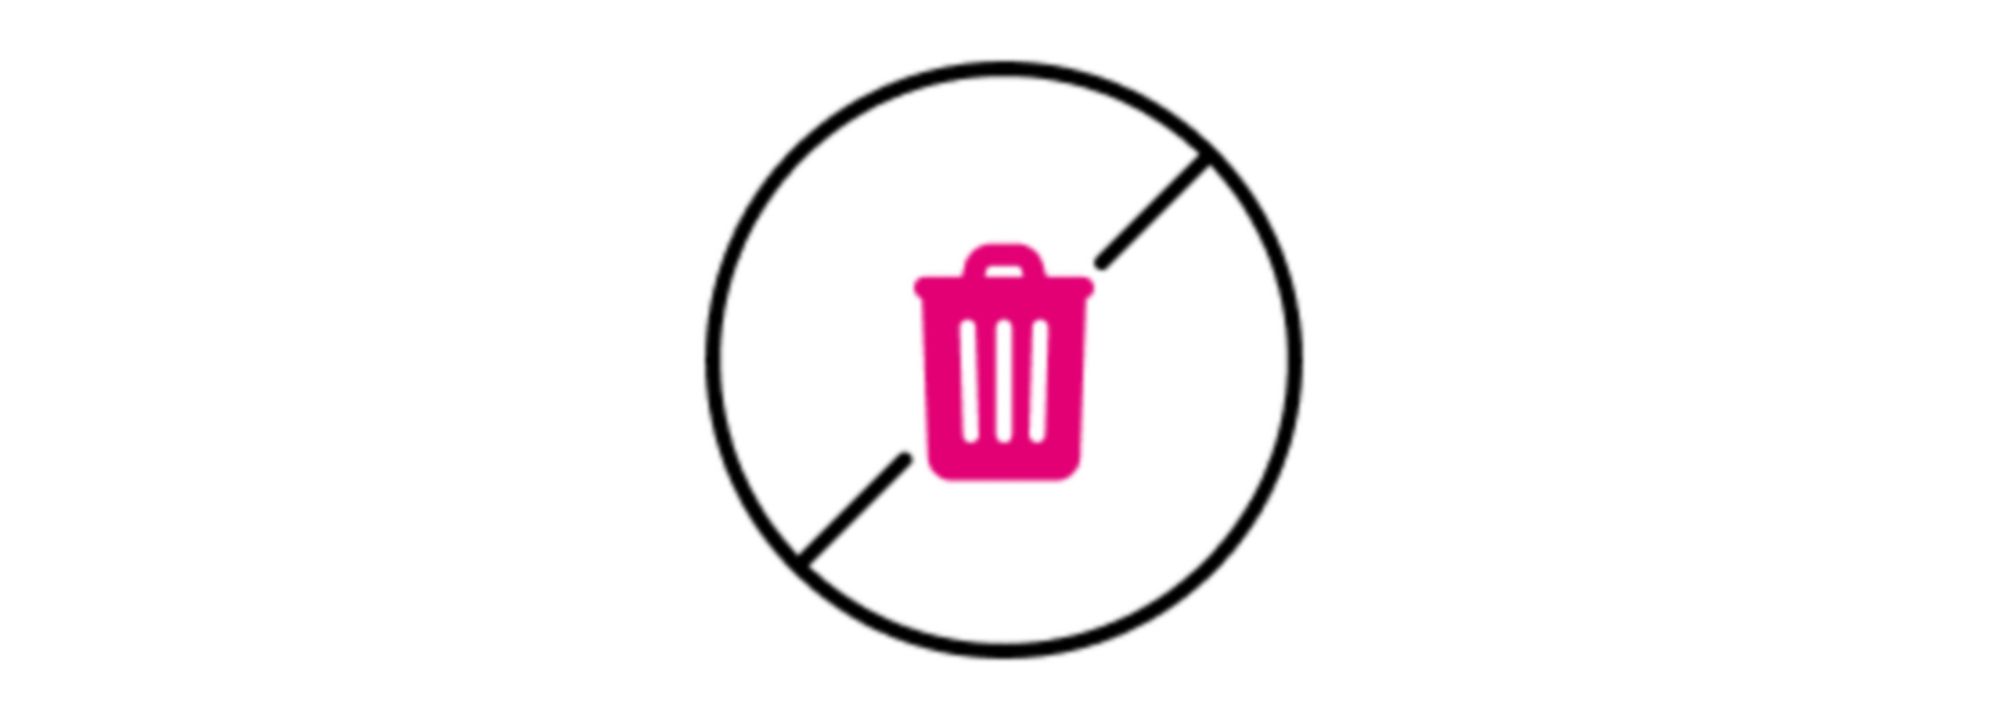 Ícono de un círculo con una barra diagonal sobre un cubo de basura que representa un signo de "No arrojar residuos".